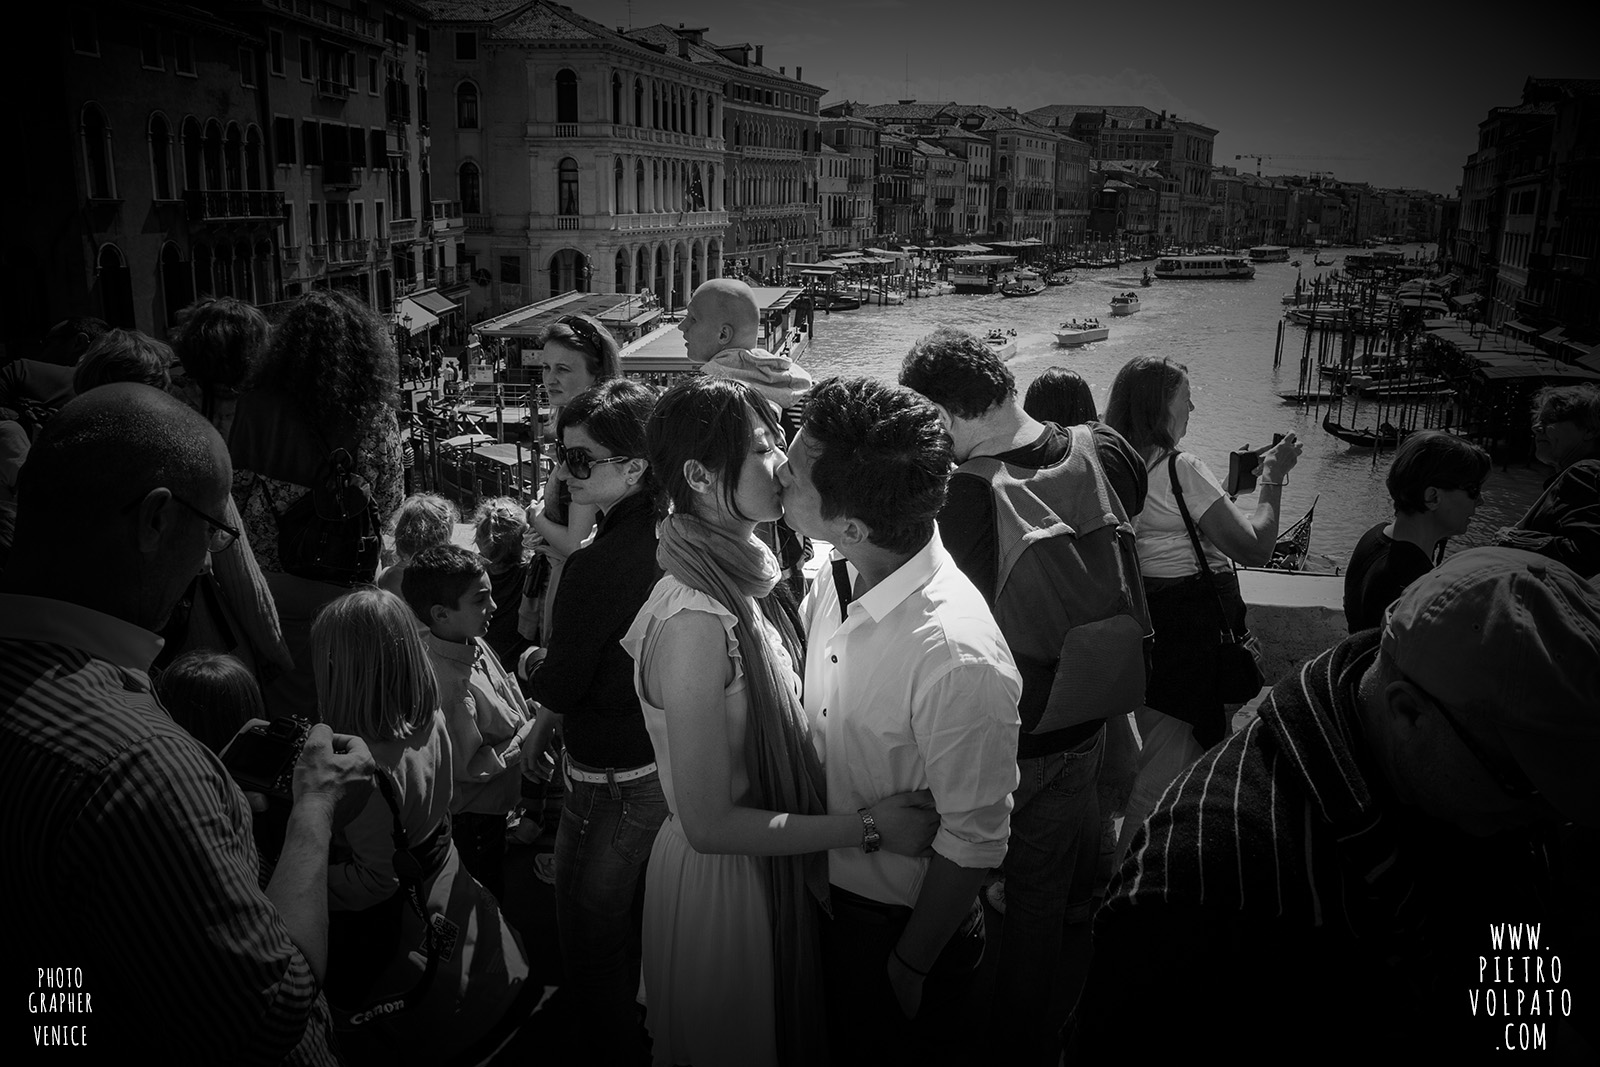 fotografo a venezia per servizio fotografico durante una passeggiata romantica e divertente per una coppia in vacanza a venezia